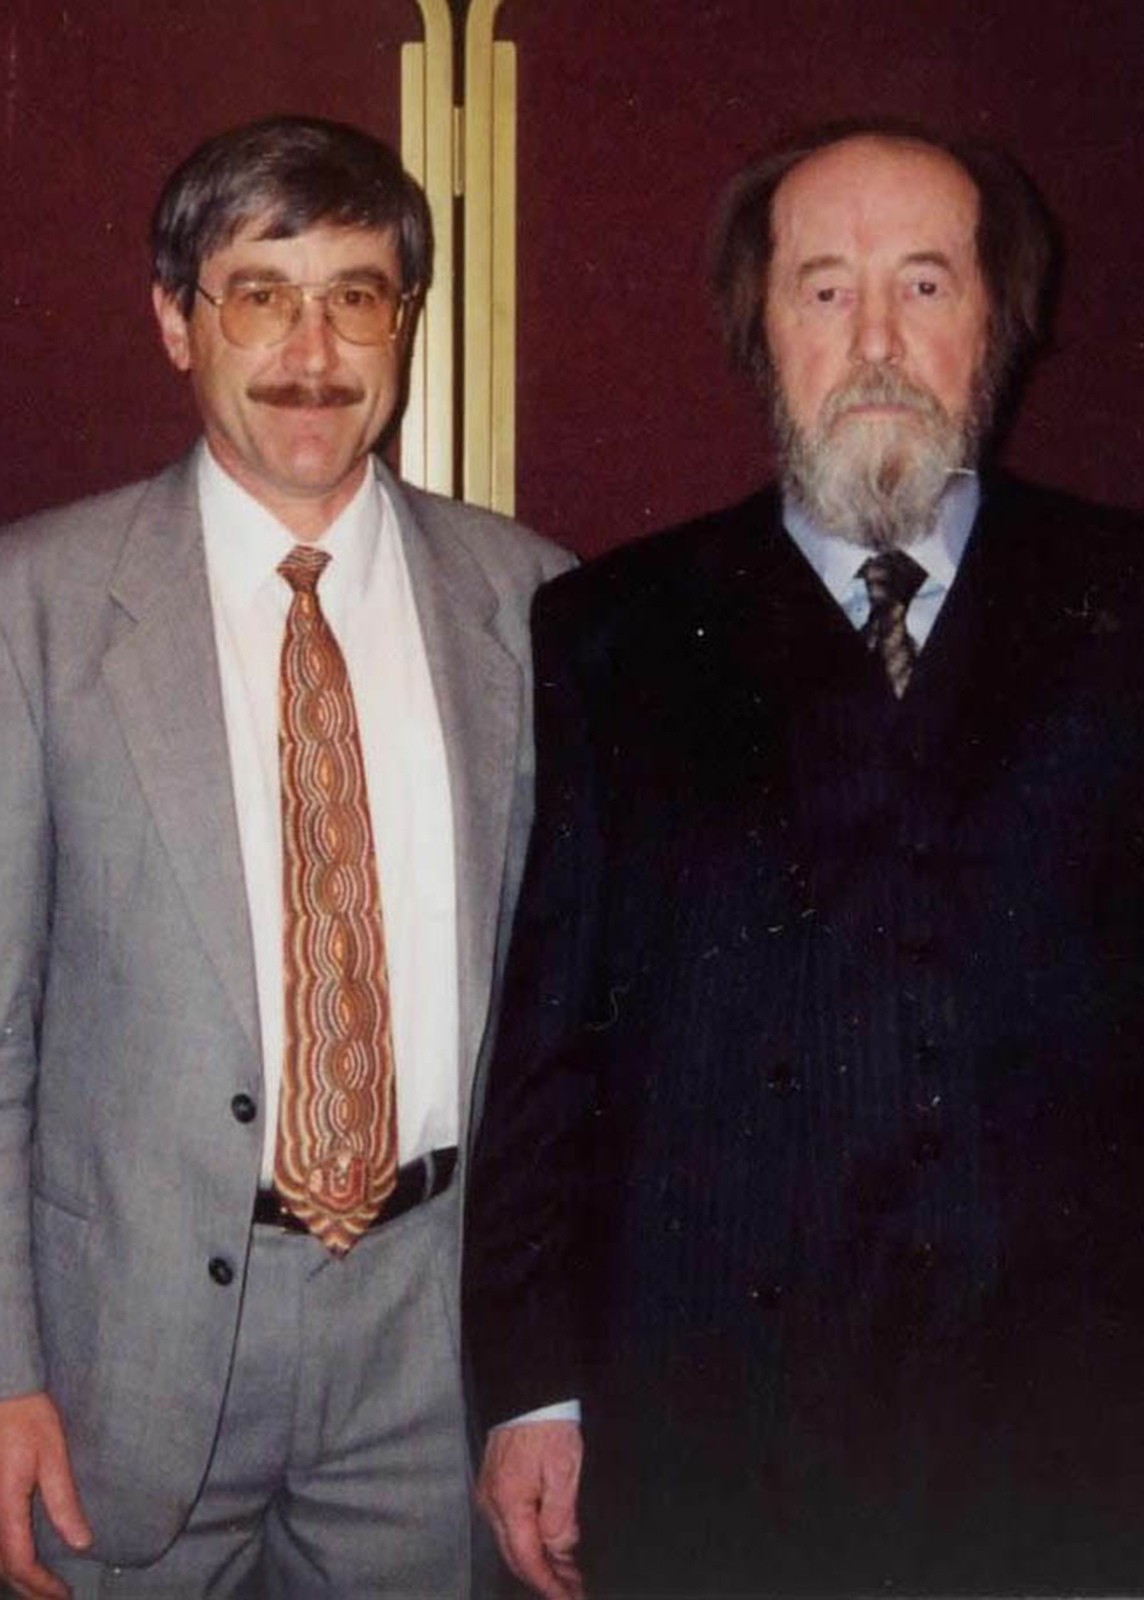 Davies with Solzhenitsyn